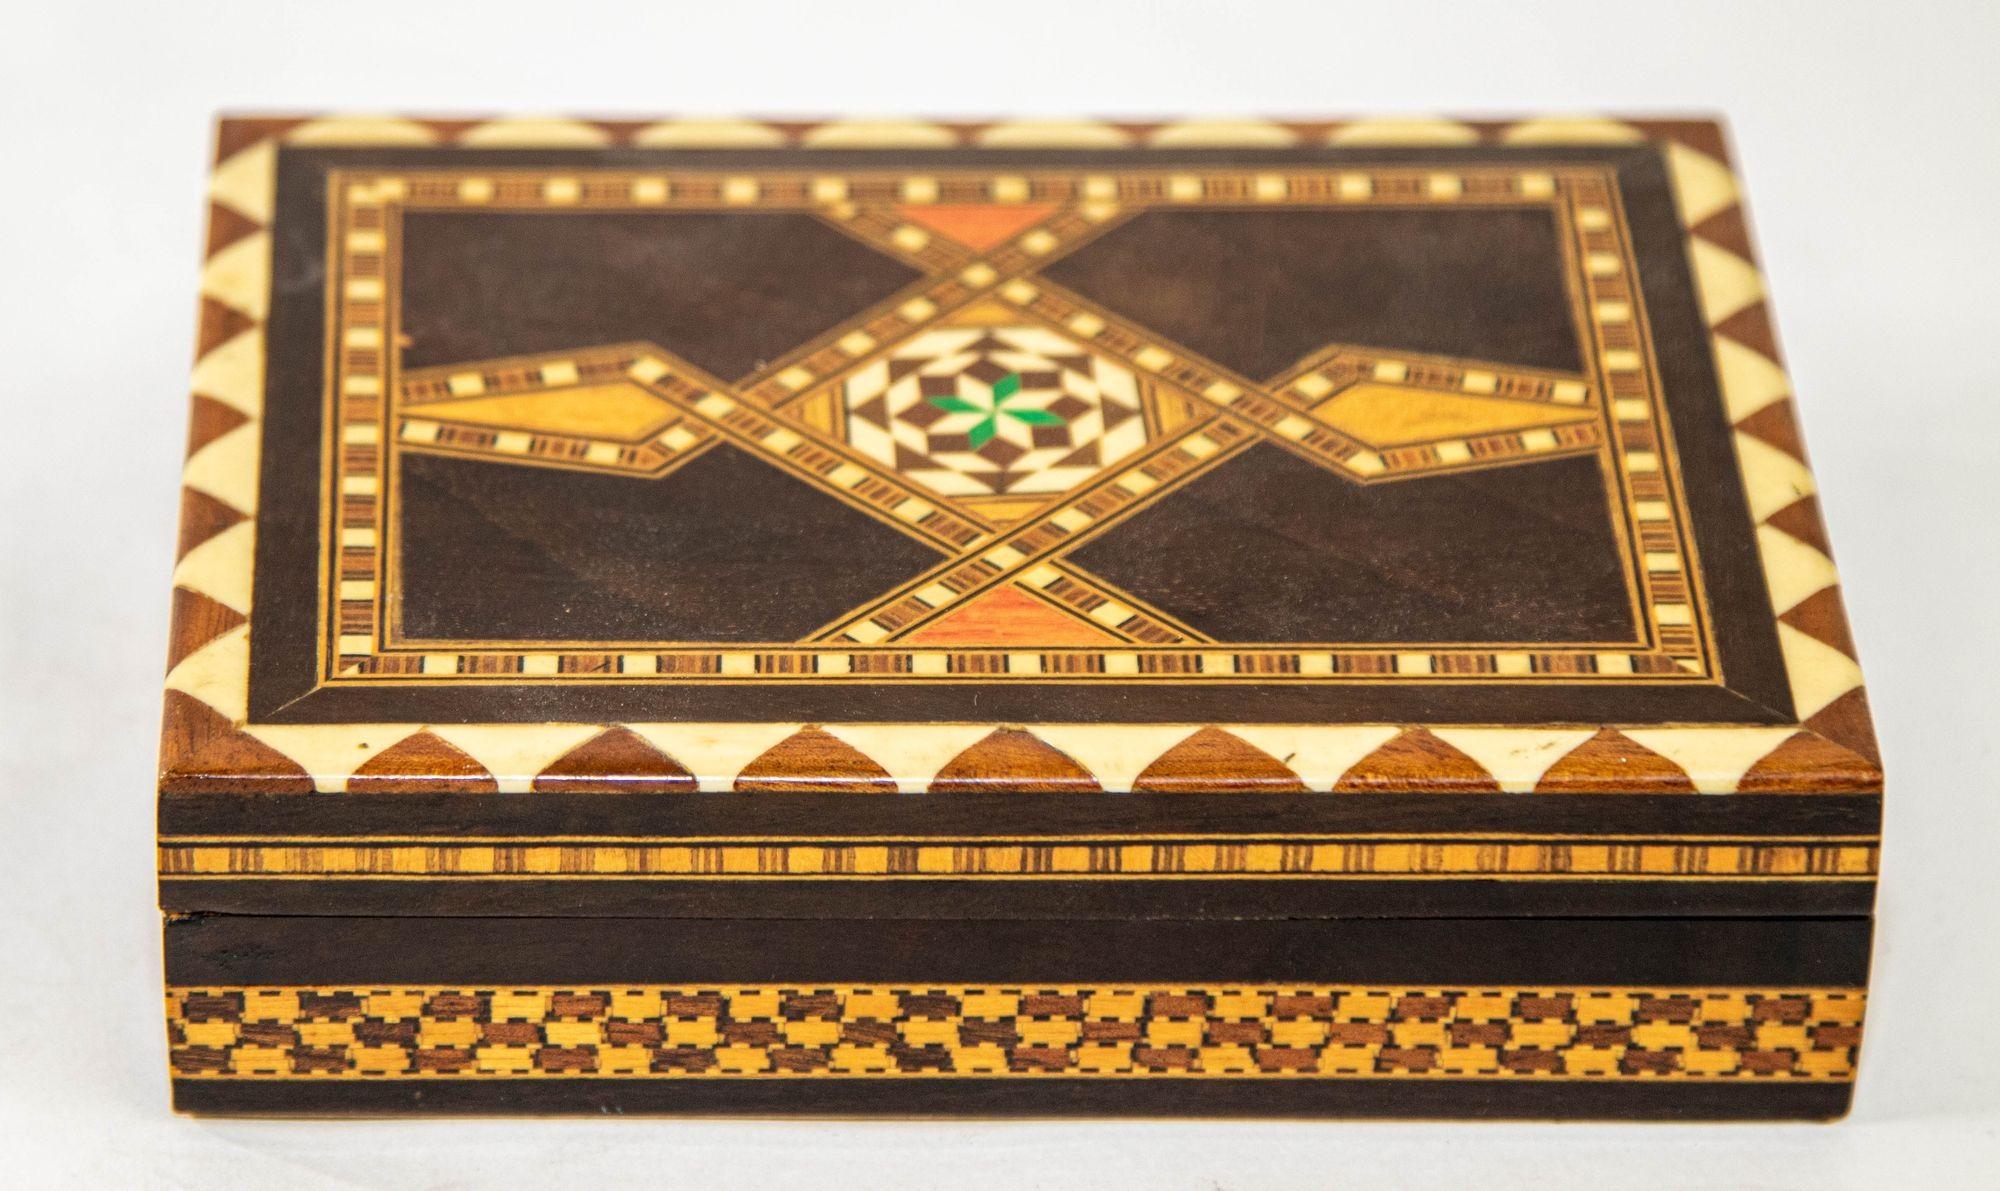 Mitte des 20. Jahrhunderts maurische Spanien Intarsien Mosaik Box.
Handgefertigtes geometrisches Unikat im maurischen Design.
Syrischer Stil aus dem Nahen Osten, maurisches Spanien Granada mit Mikro-Mosaik-Einlegearbeiten.
Atemberaubende